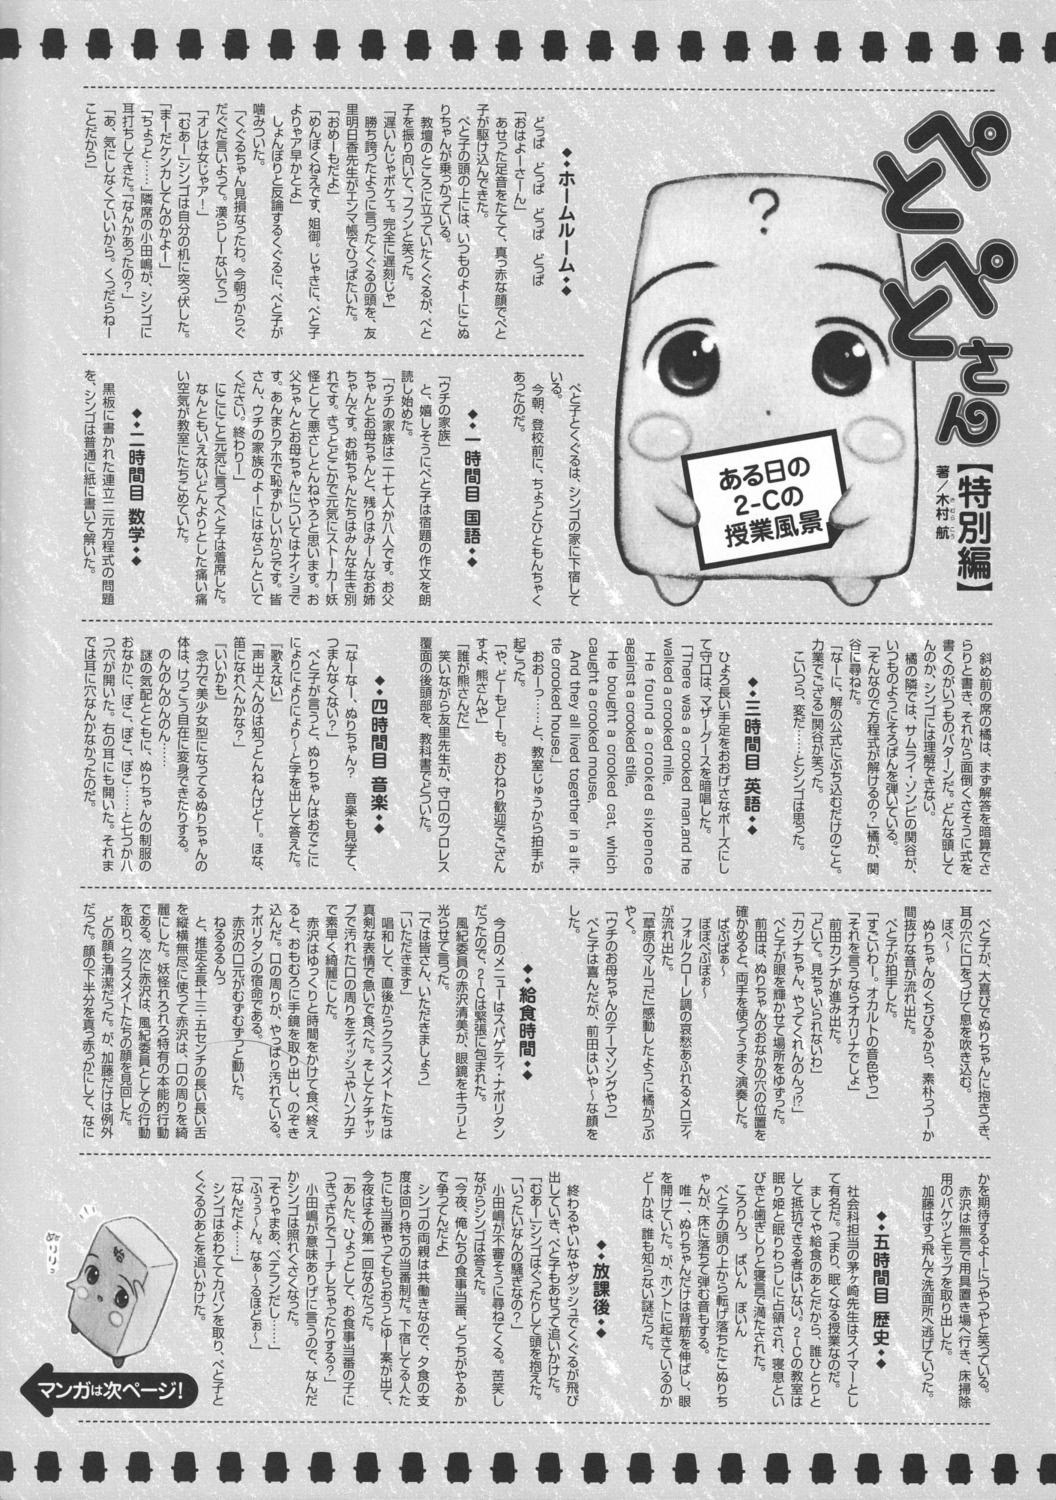 konuri-chan monochrome petopeto-san text yug